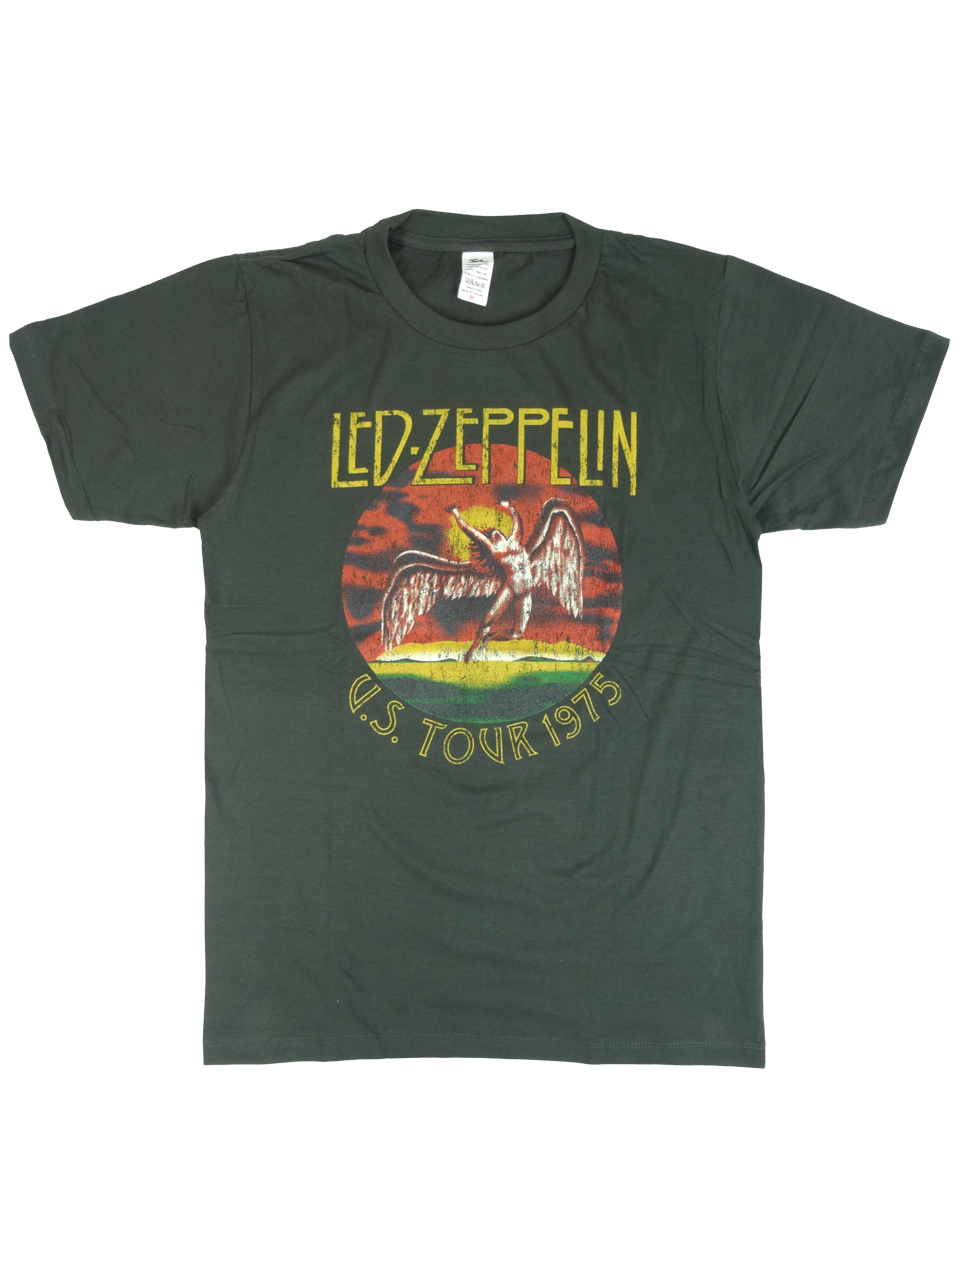 ヴィンテージ風 ロックTシャツ Led Zeppelin レッド ツェッペリン 1975 U.S.Tour brt-0160